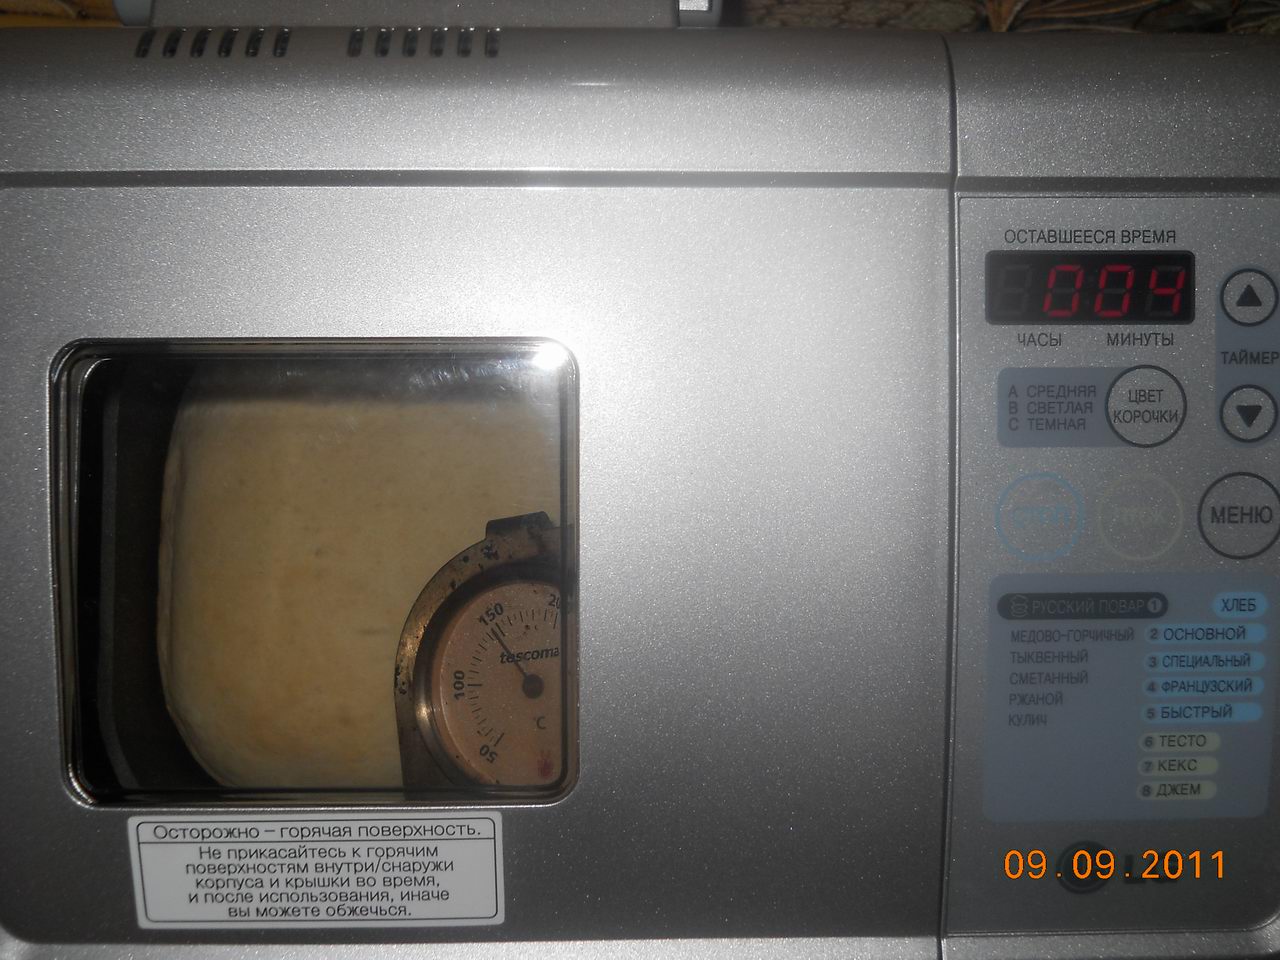 הקרום (מכסה) הכהה על גבי תנור LG HB 1002 לא עובד